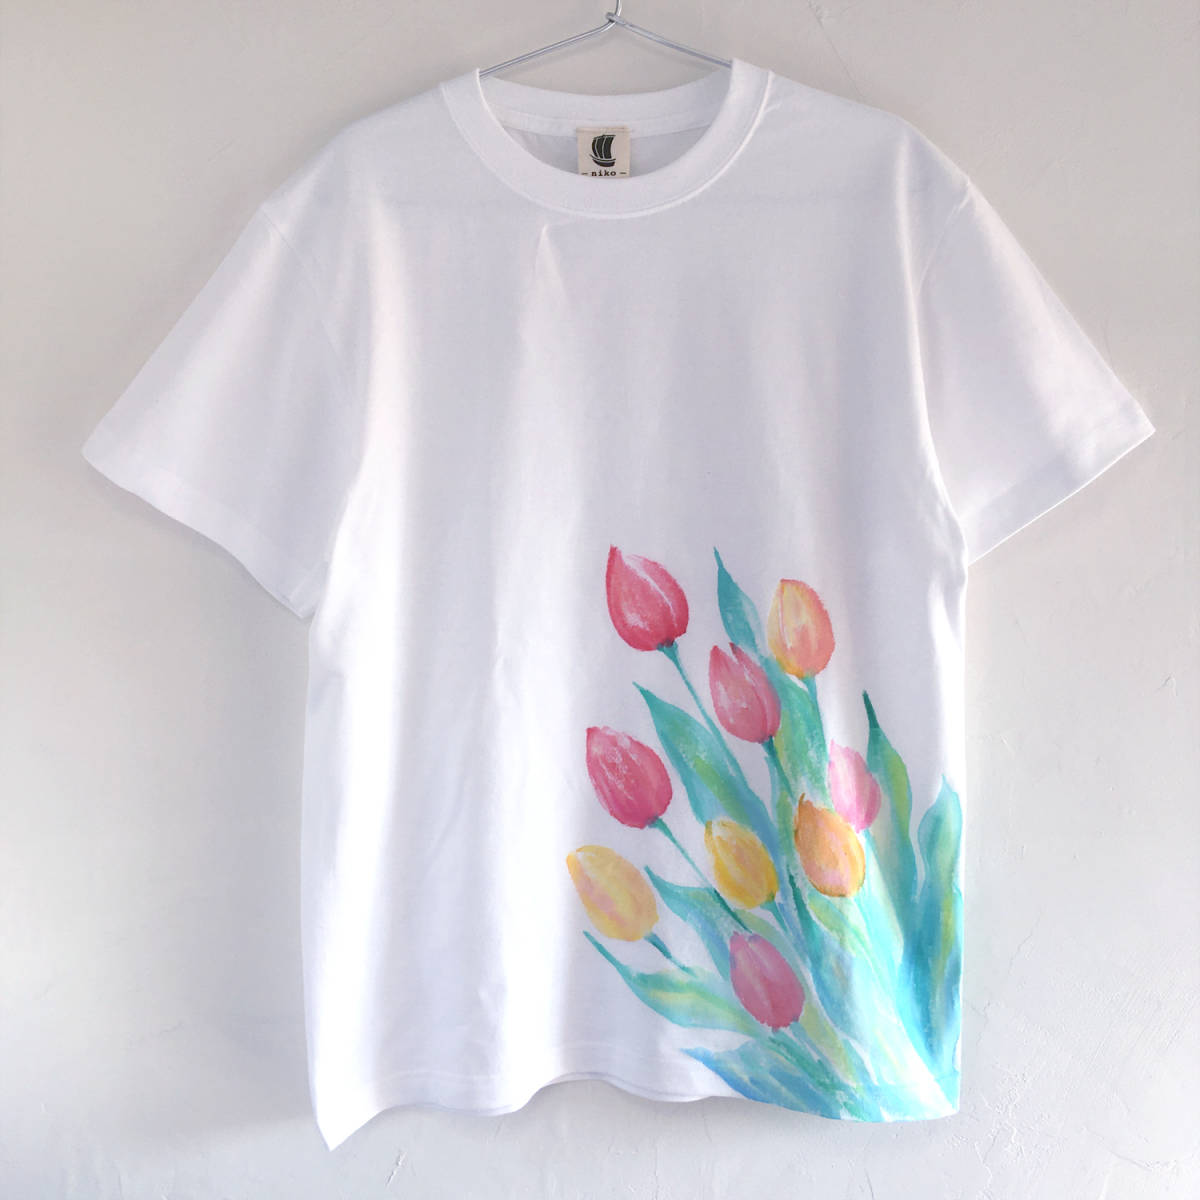 T-shirt motif tulipe Taille XL homme T-shirt motif fleur de tulipe peint à la main, Taille XL et plus, col rond, Couleur unie